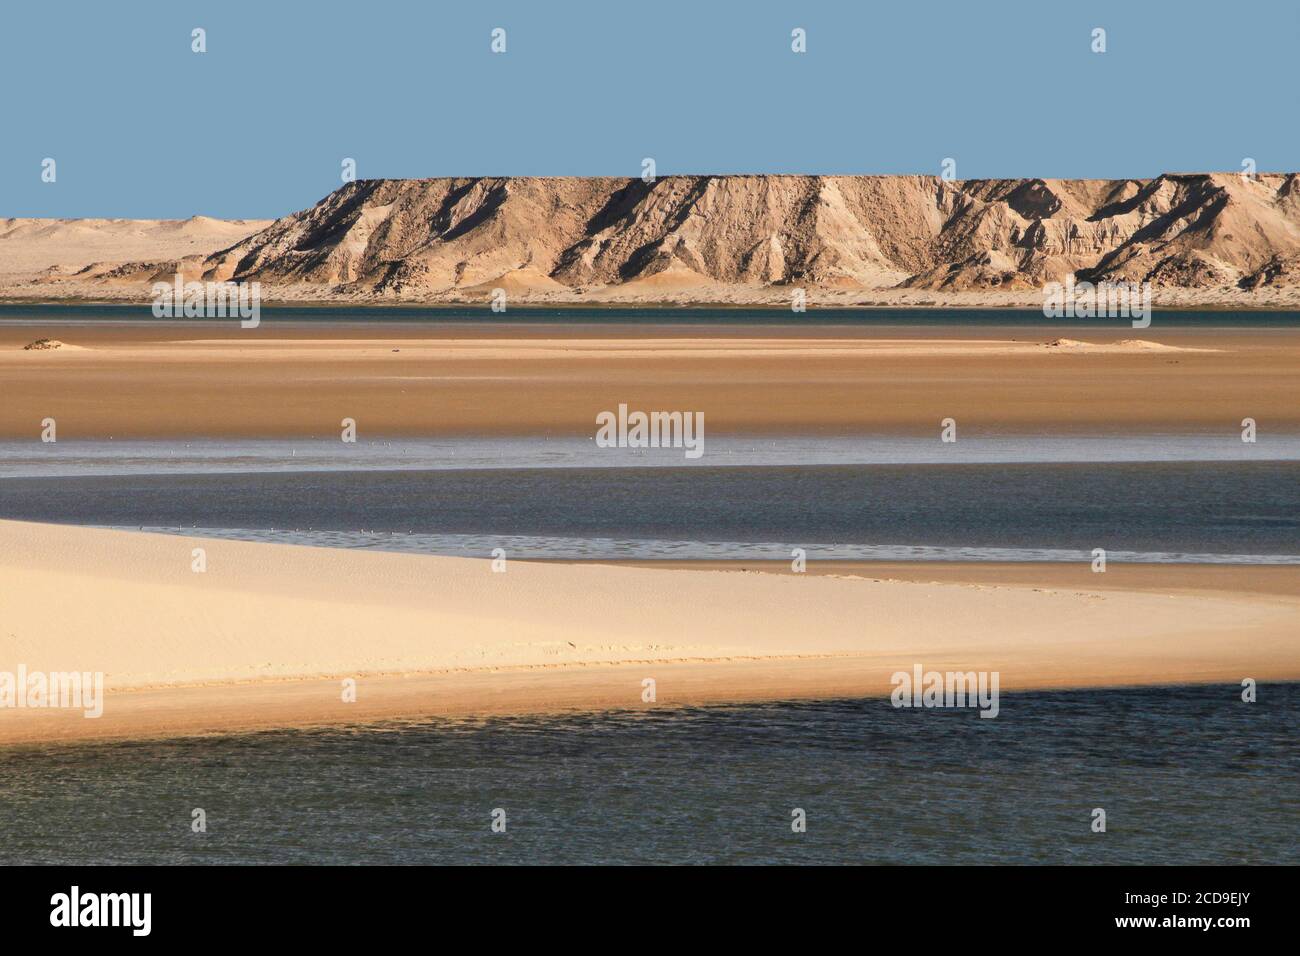 Maroc, Sahara occidental, Dakhla, site de la dune blanche située entre le lagon et les montagnes Banque D'Images